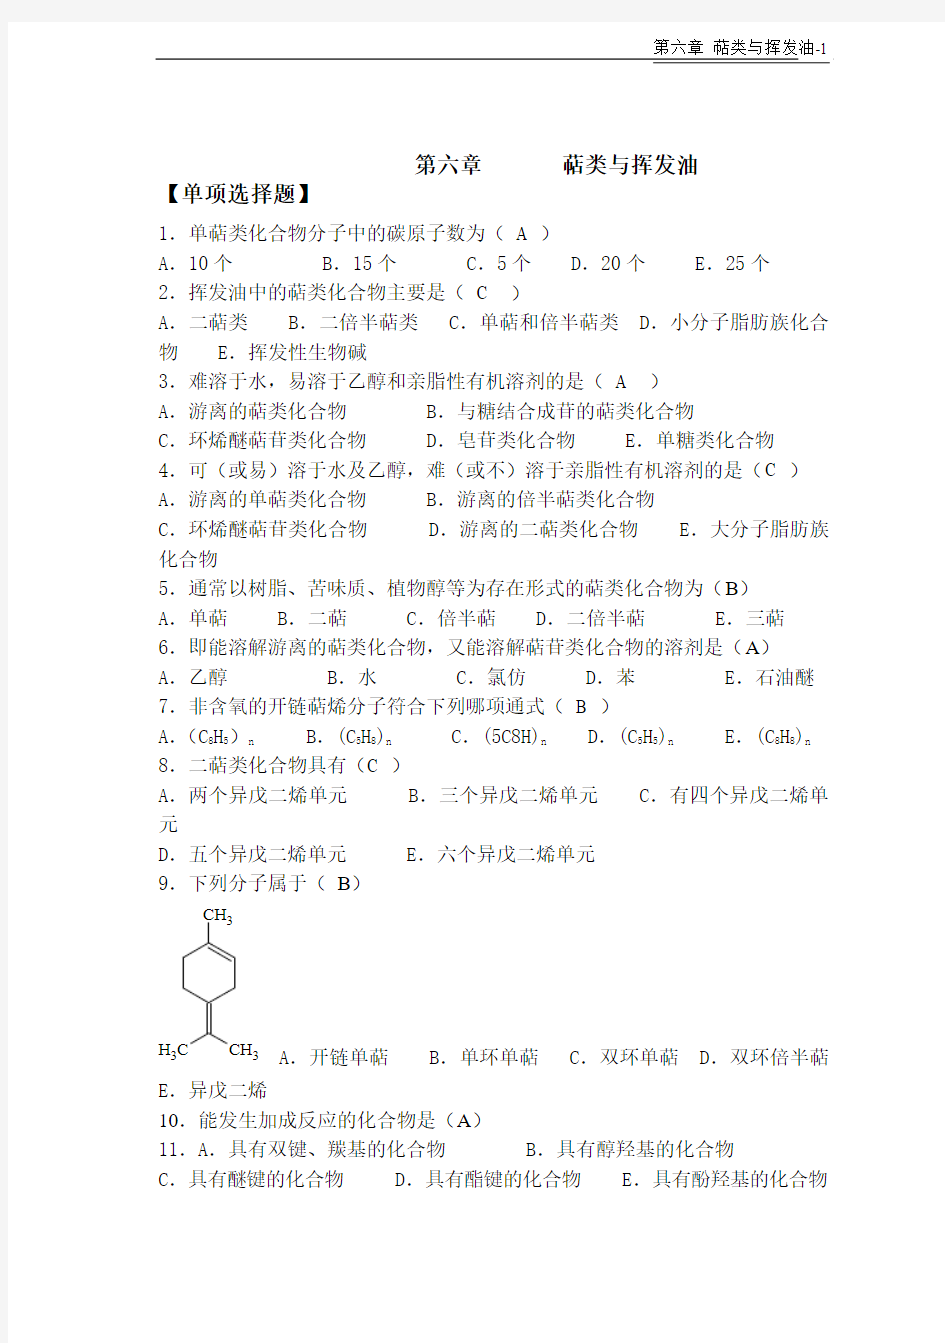 天然药物化学-第6章萜类与挥发油-20101026完美修正版..